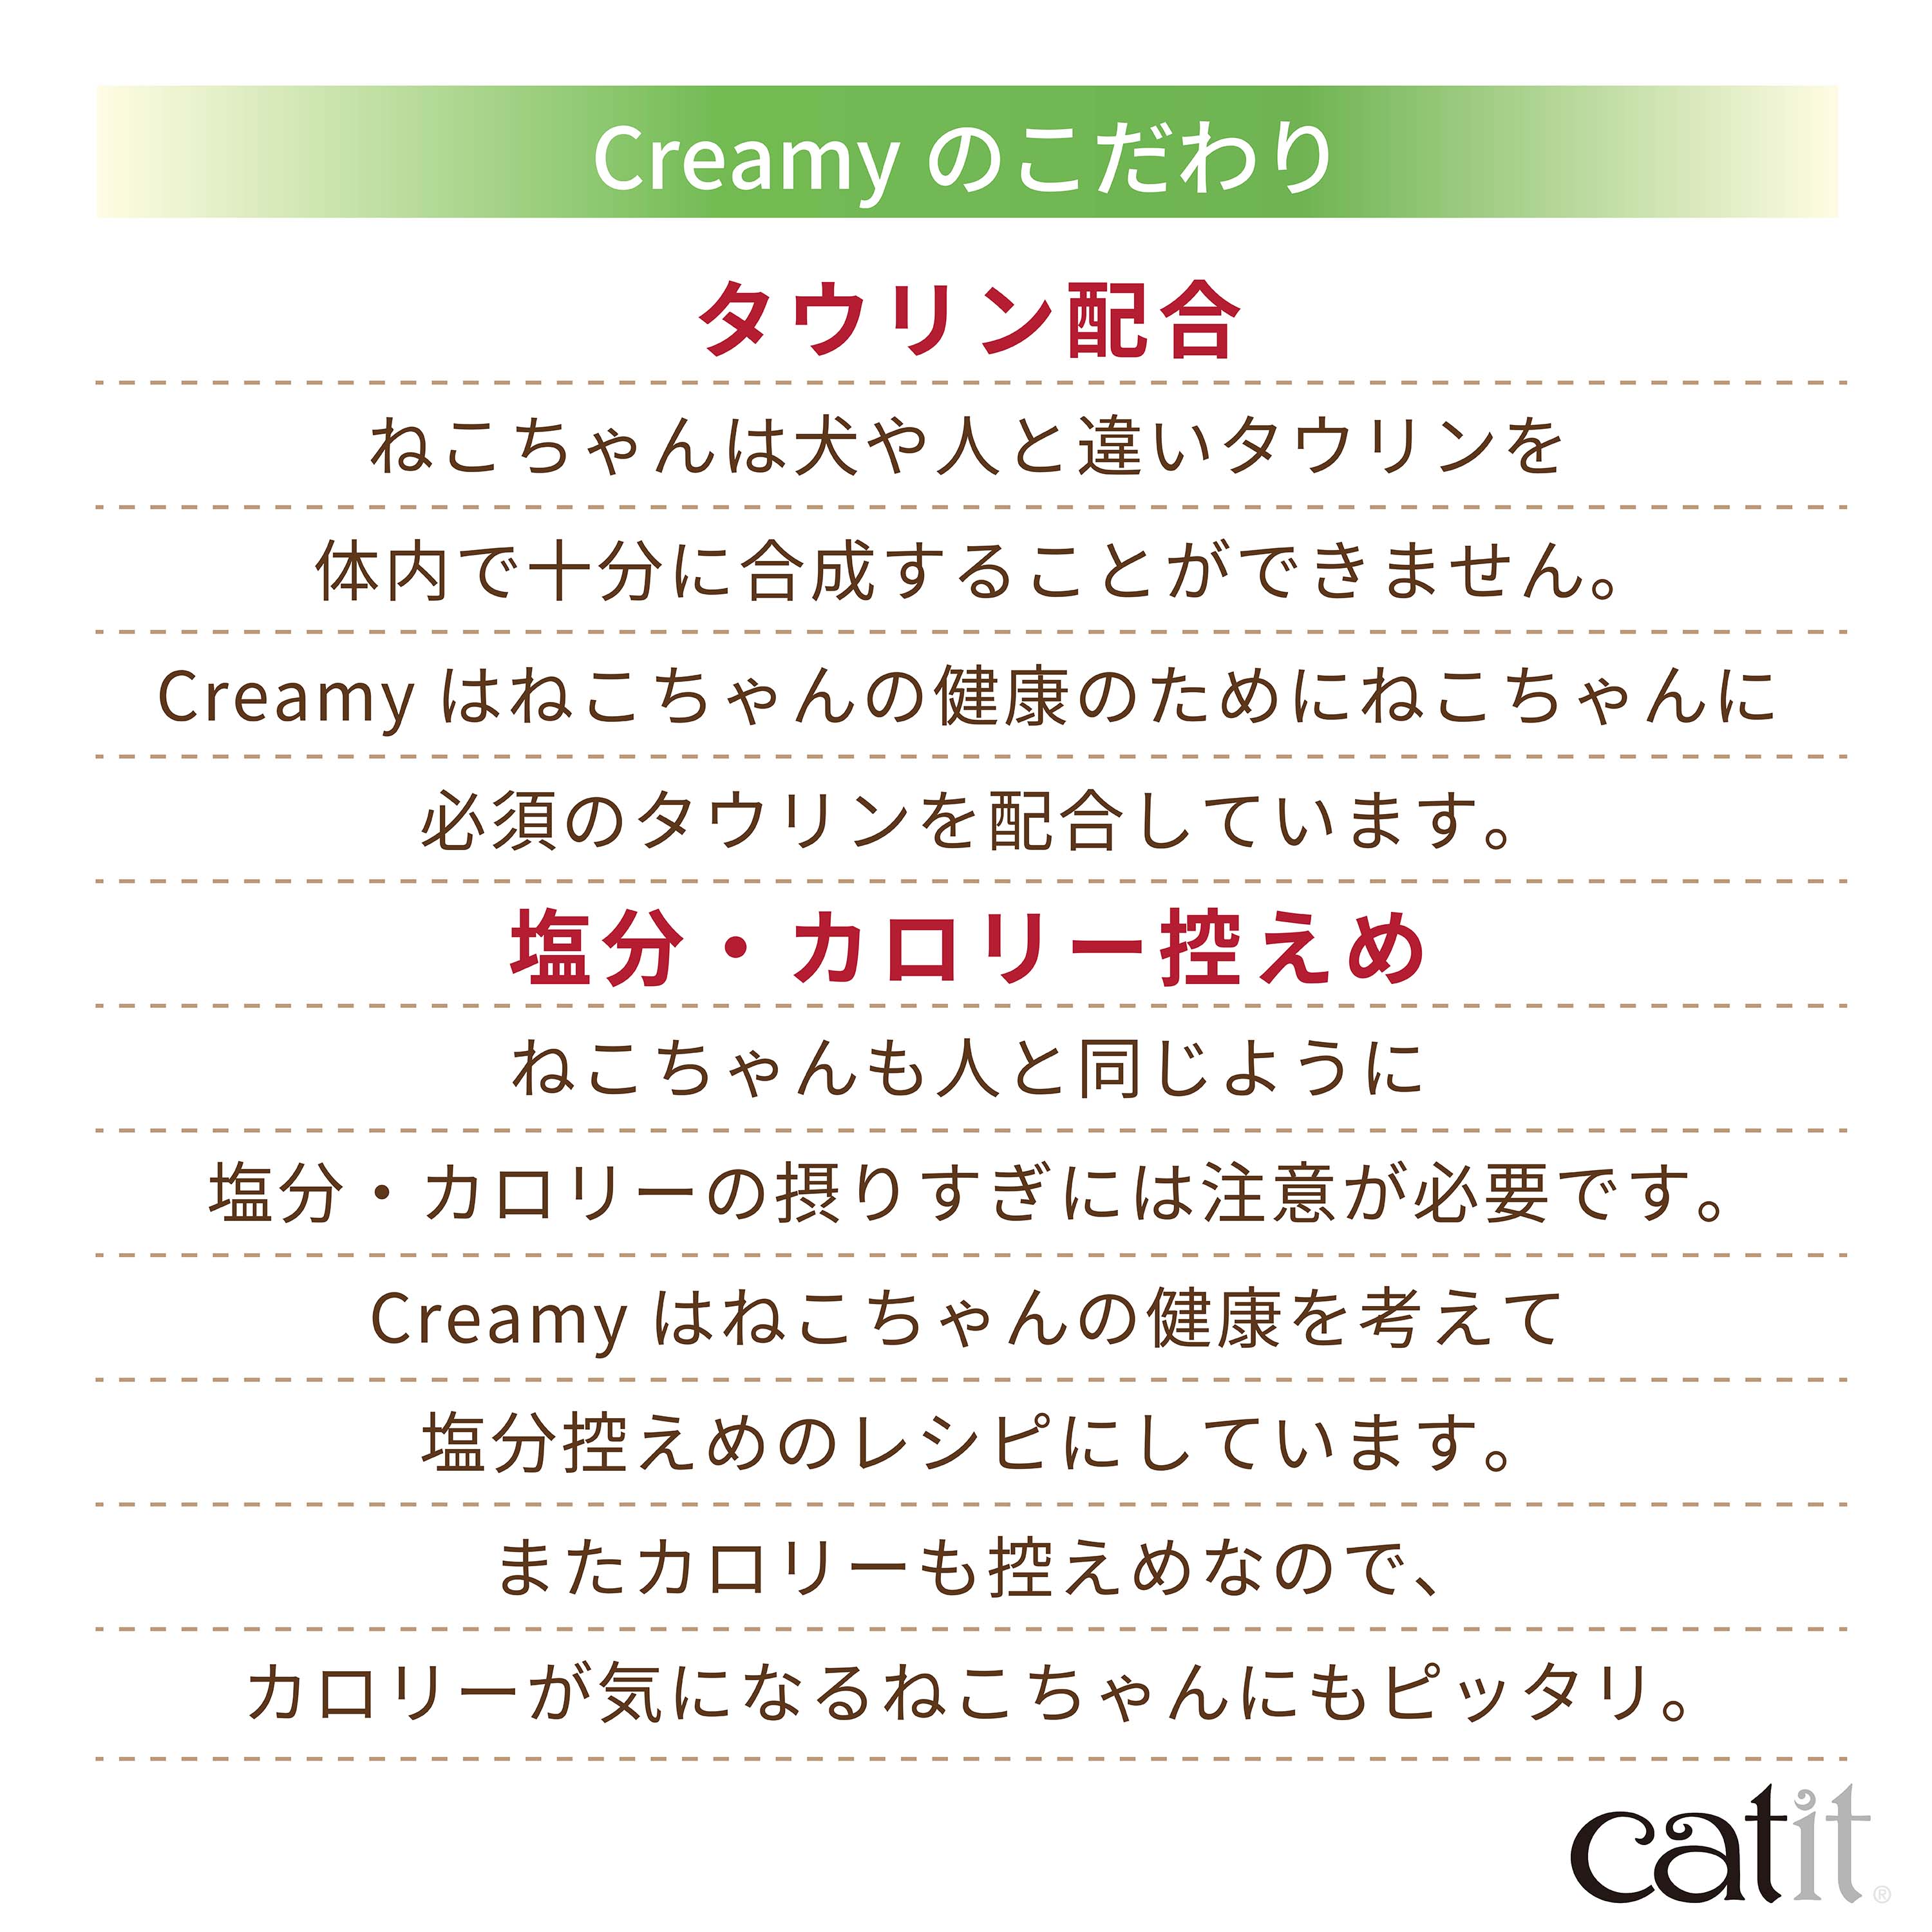 Catit Creamy まぐろ 12本入